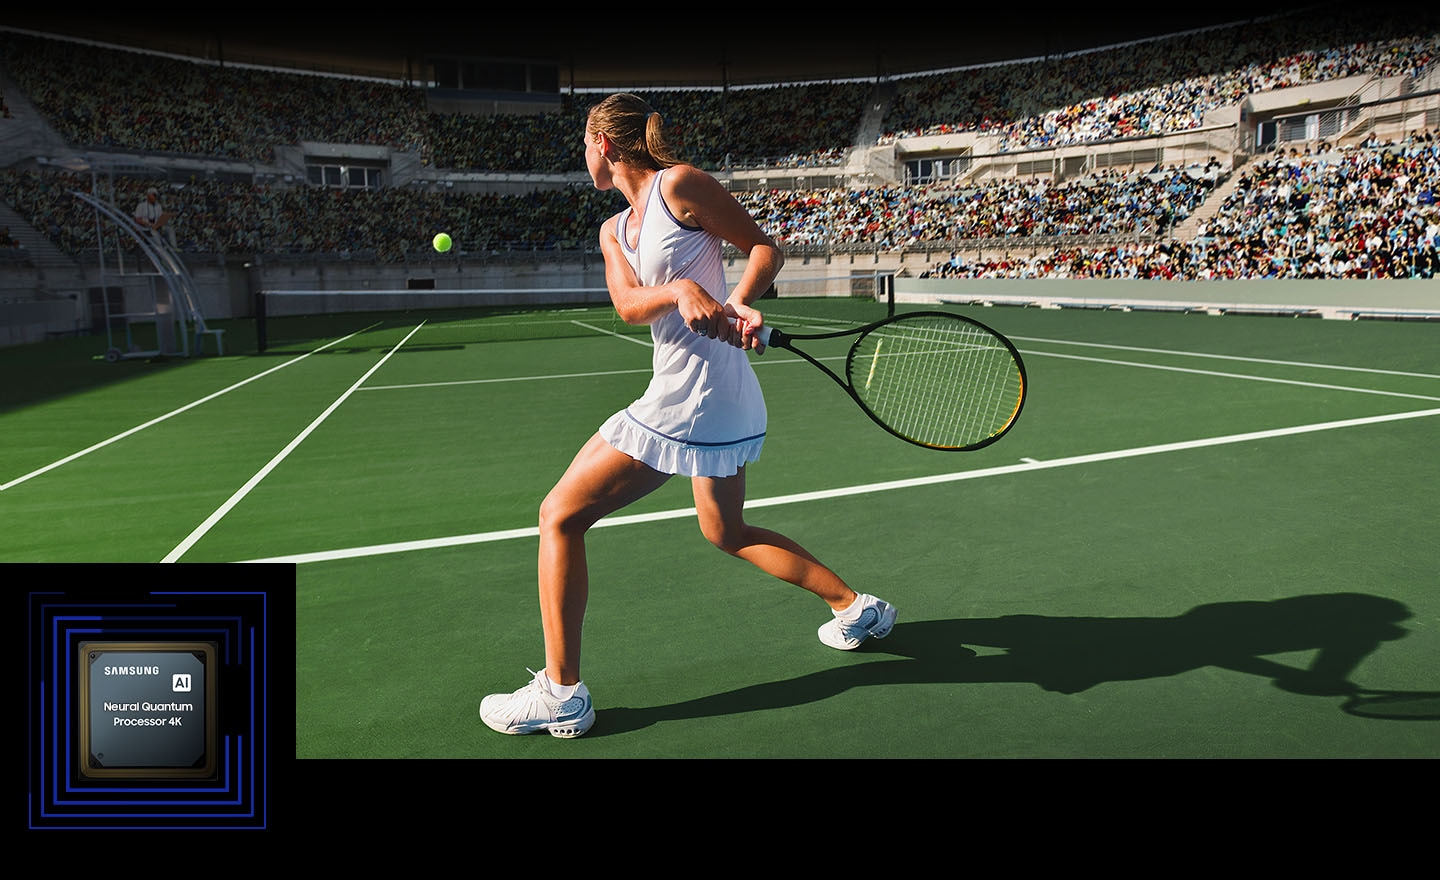 Ženska igra tenis pred veliko množico. Nevronski kvantni procesor 4K obdela številne prikazane predmete in izboljša celotno sceno. Nevronski kvantni procesor 4K je prikazan v spodnjem levem kotu.